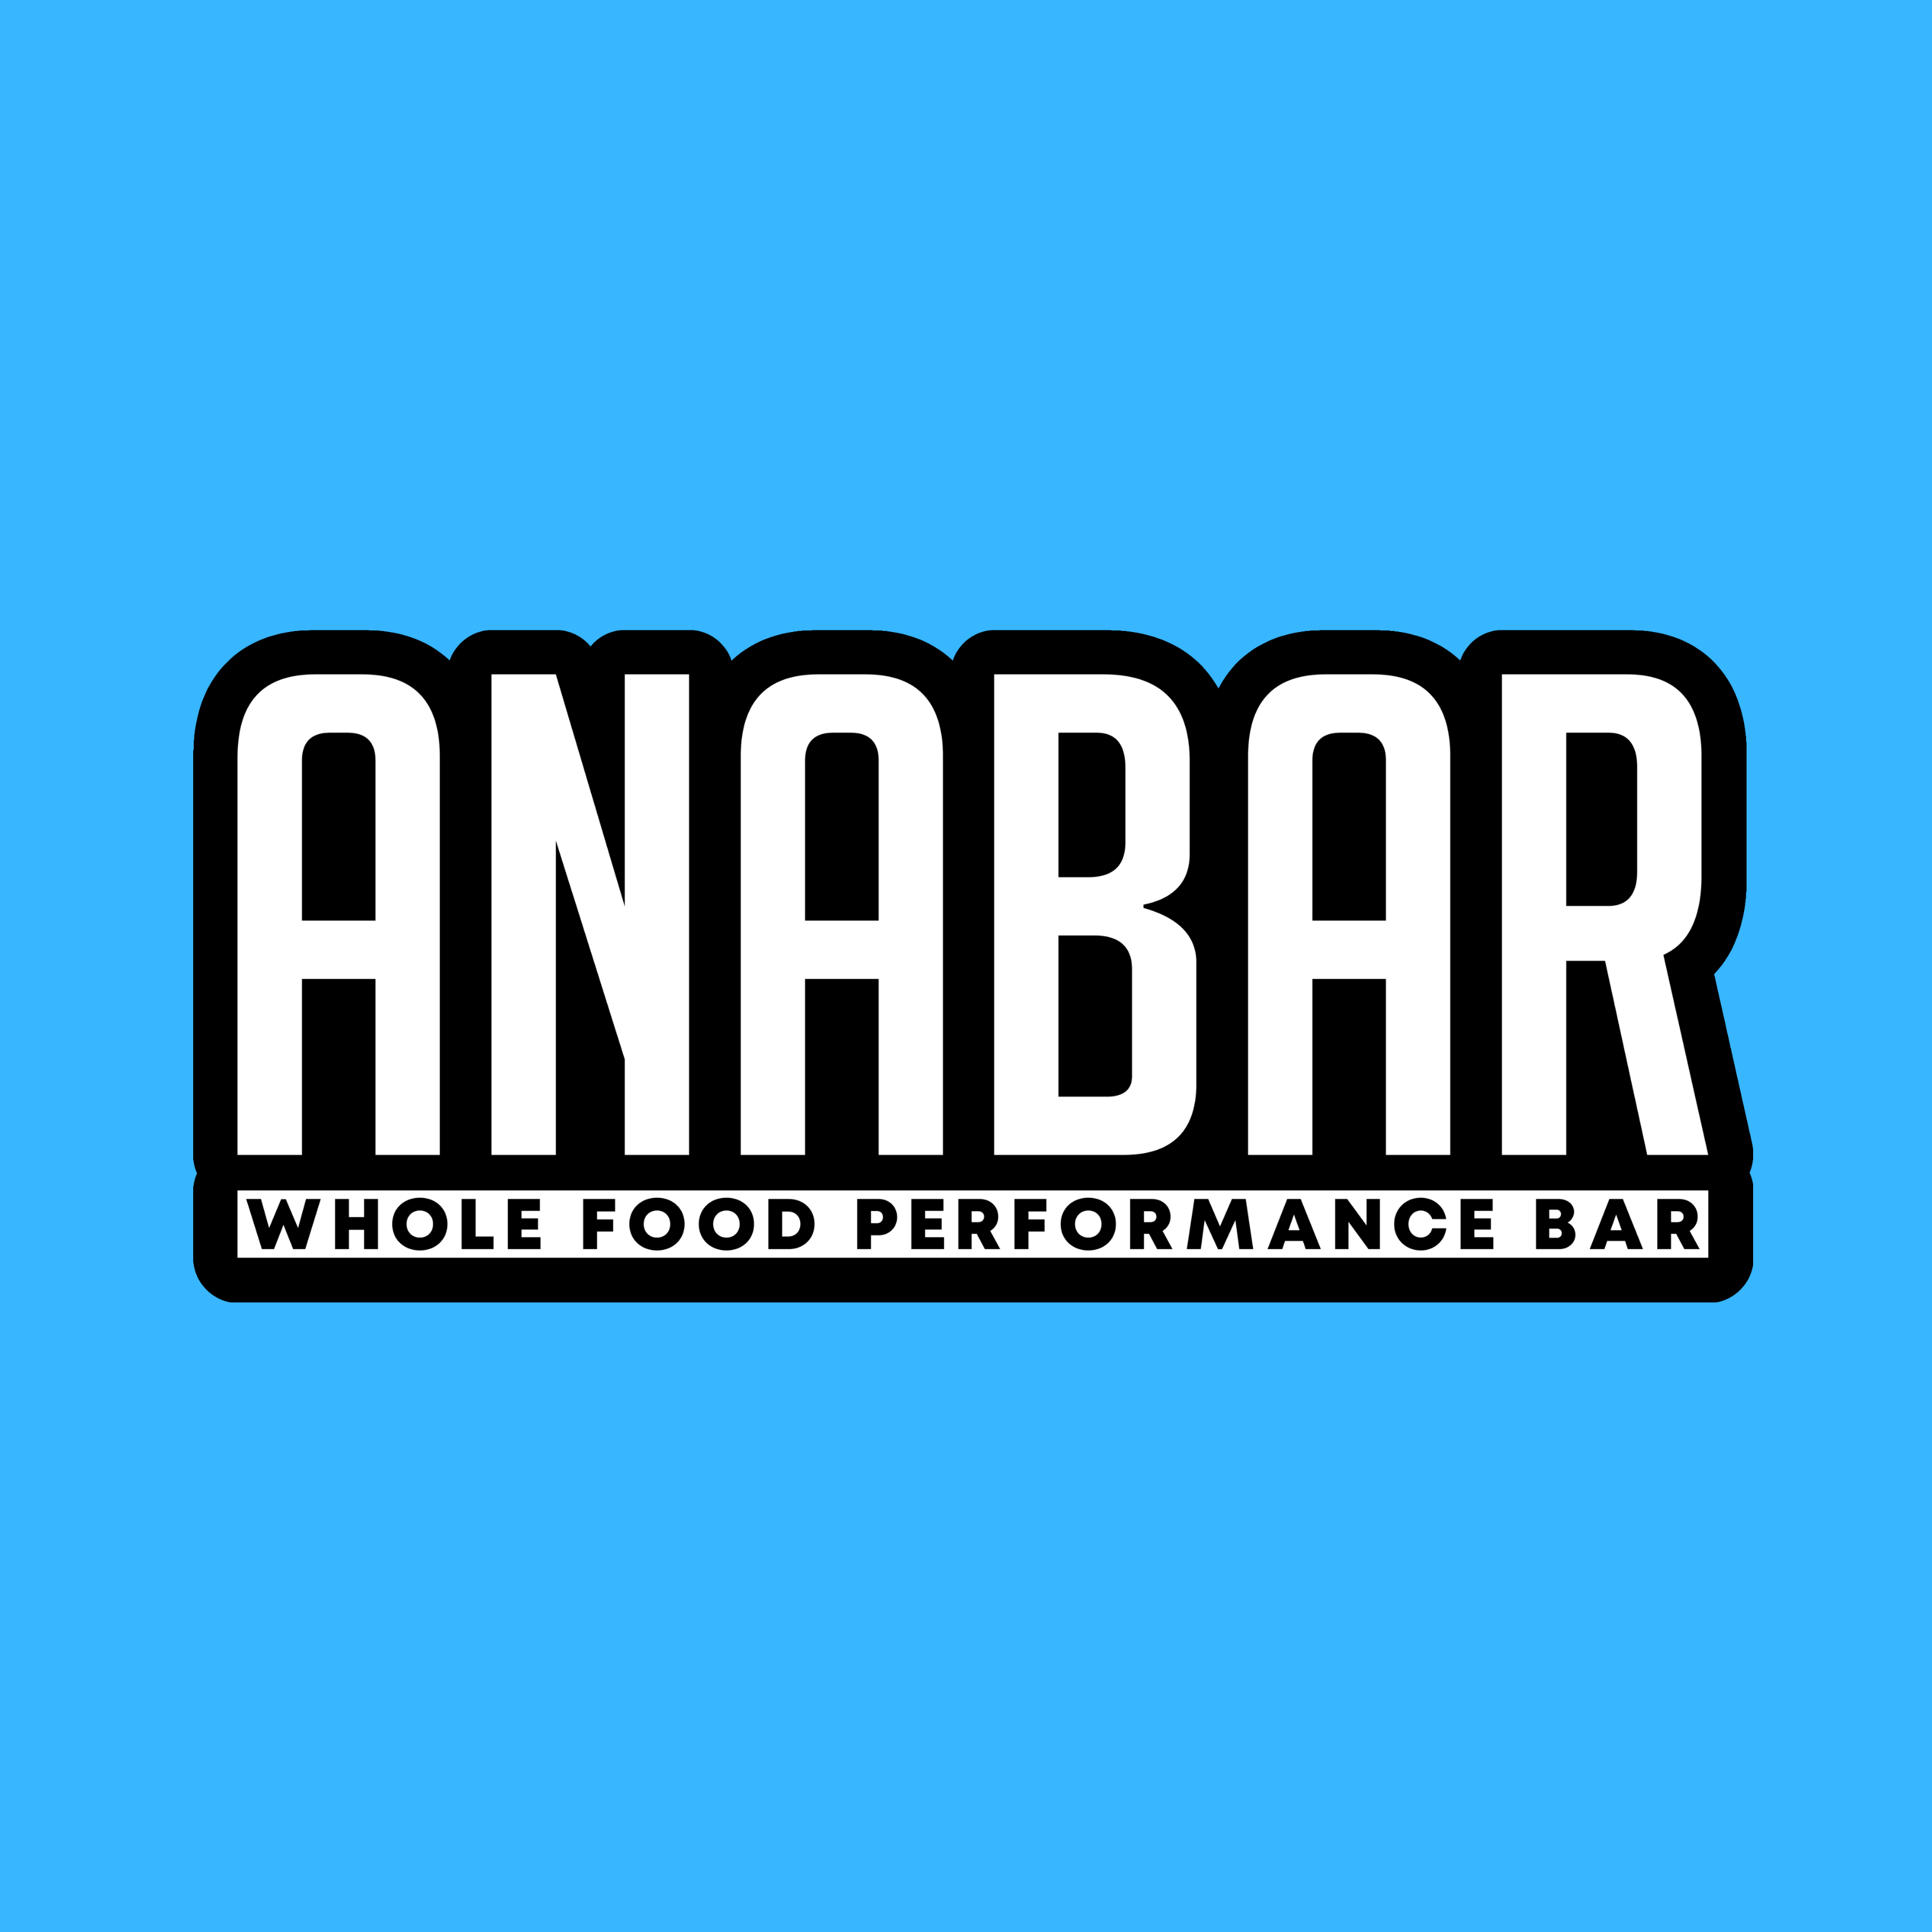 The Anabar